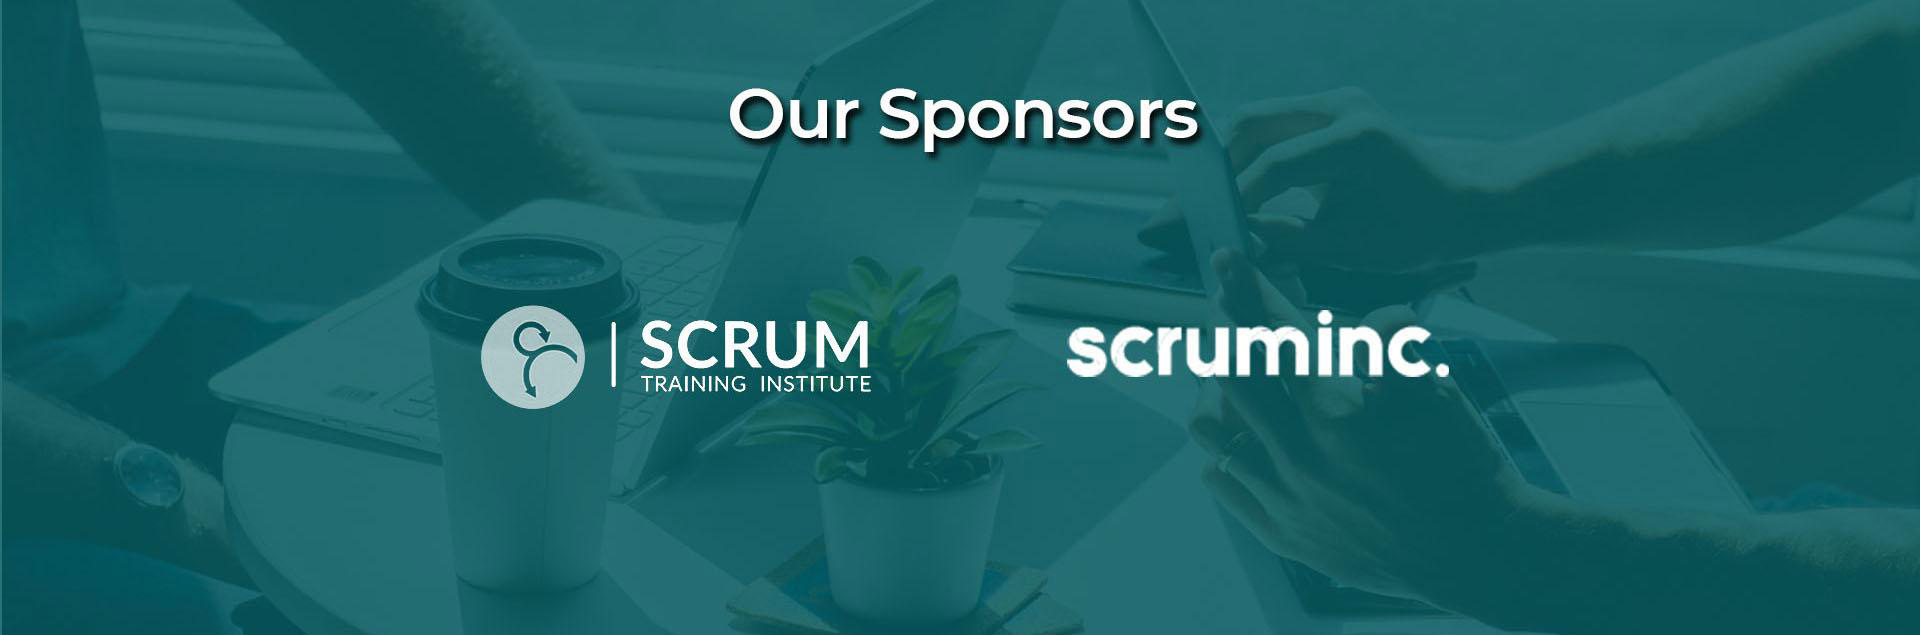 Our Sponsors, Scrum Training Institute, Scrum Inc